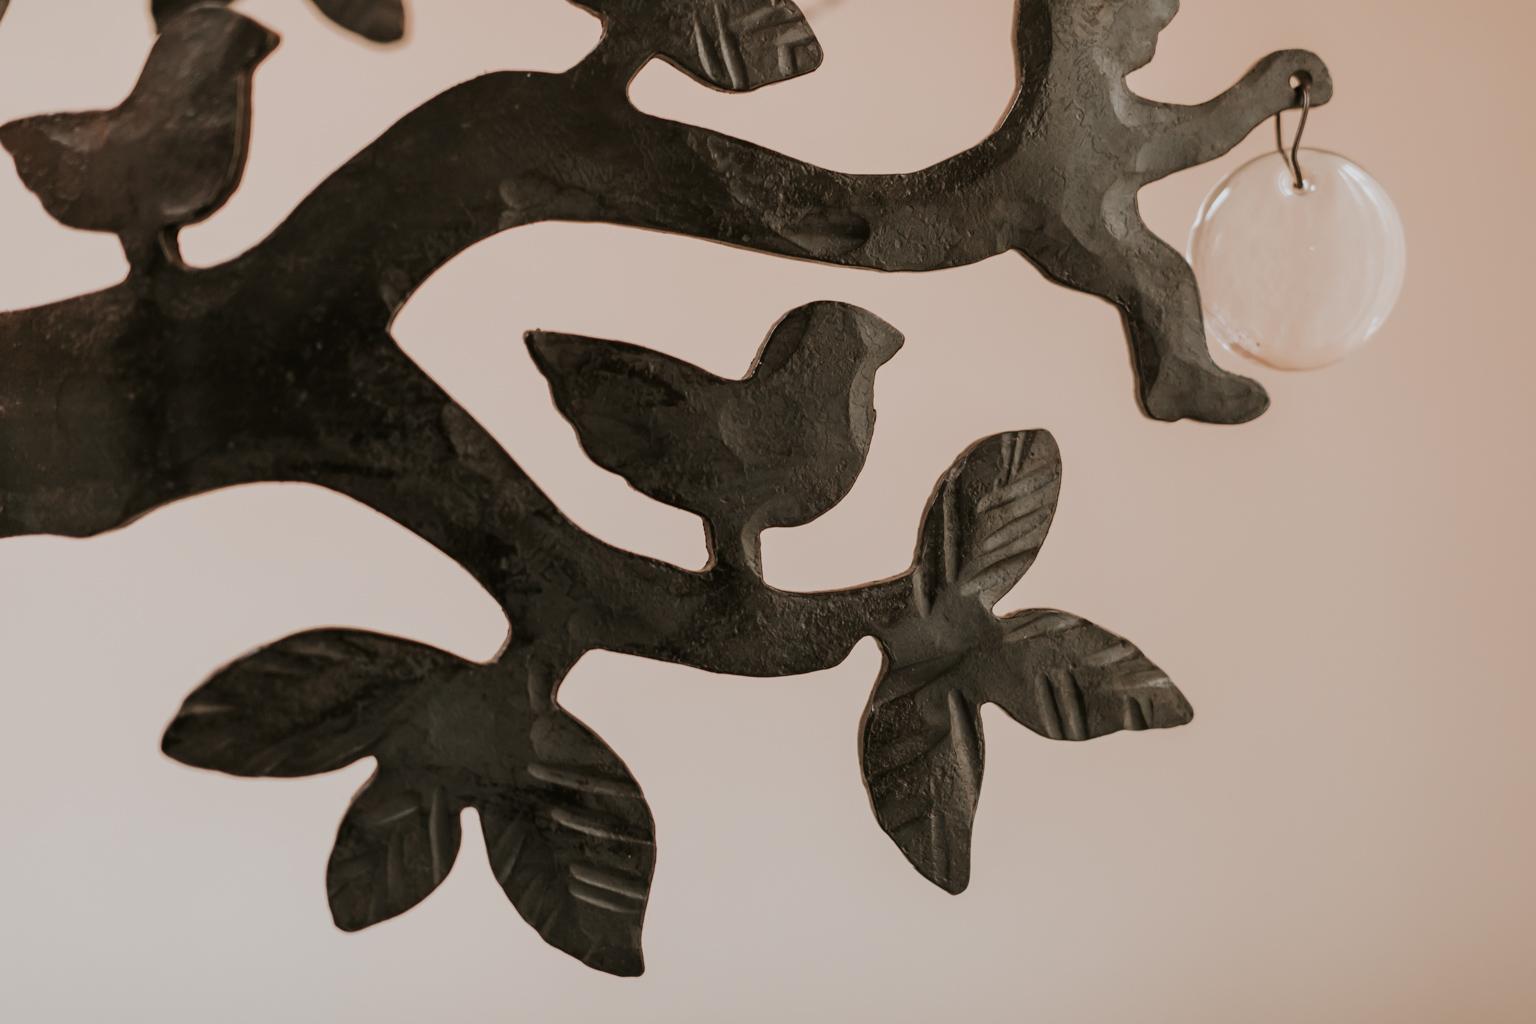 Dies ist ein skurriler:: aus Eisen geschmiedeter Baum. Entworfen von Bertil Vallien und produziert von Boda Smide. 
Zwischen den Zweigen befinden sich Silhouetten von Blättern:: Vögeln und Figuren:: Glastropfen und sieben Teelichthalter. 
Maßnahmen: